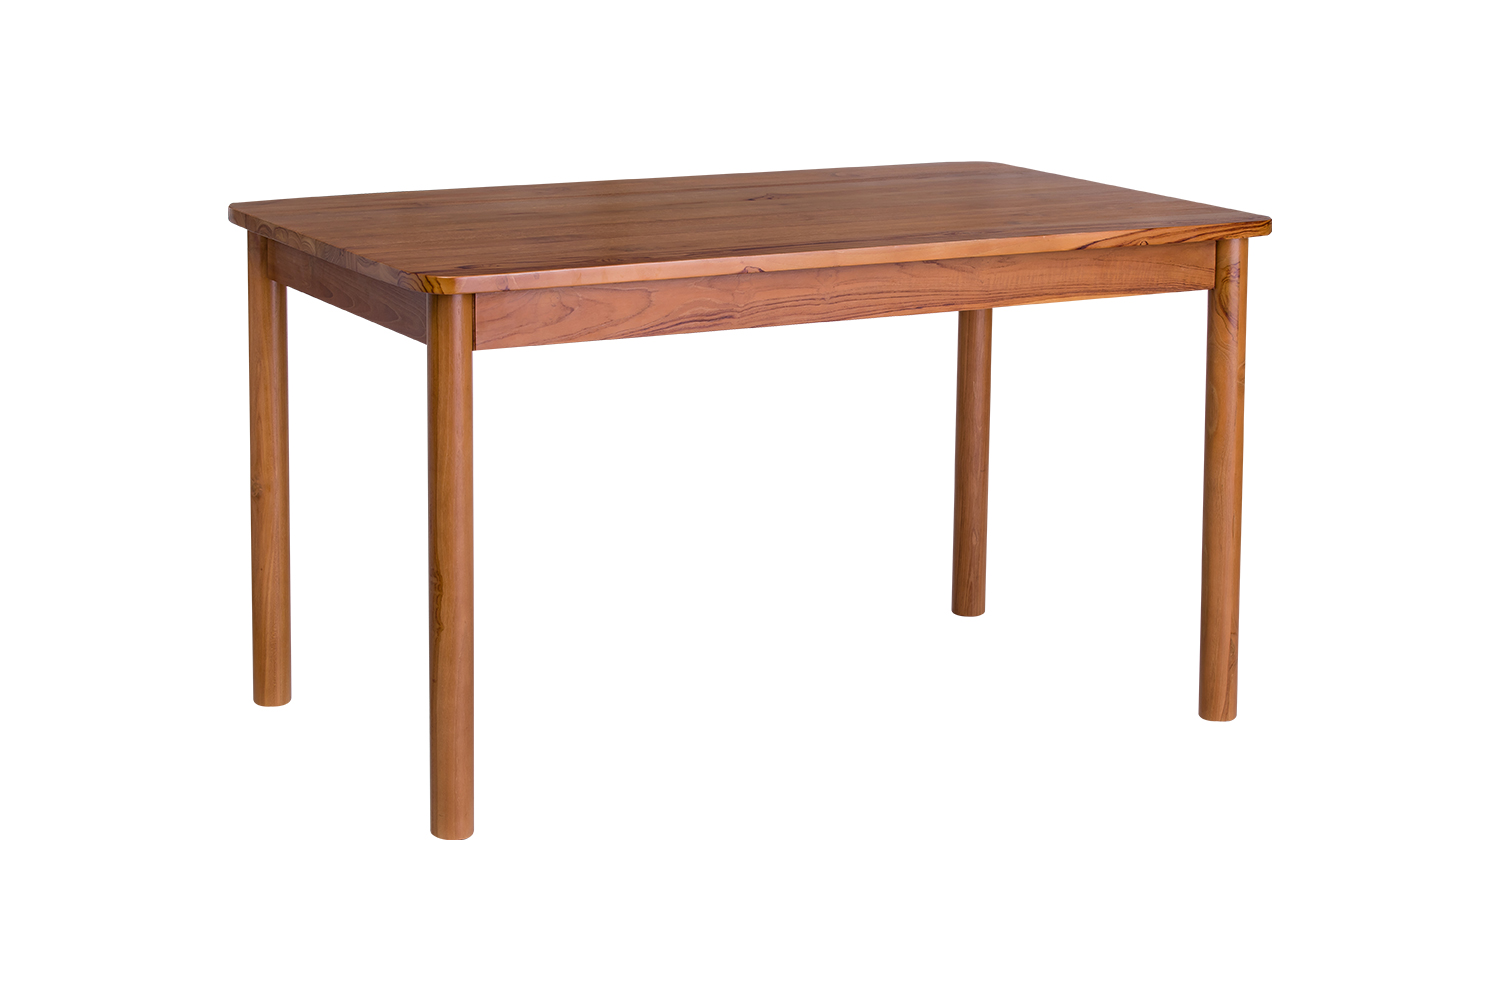 圓弧邊造型實木餐桌 柚木色-133cm側面